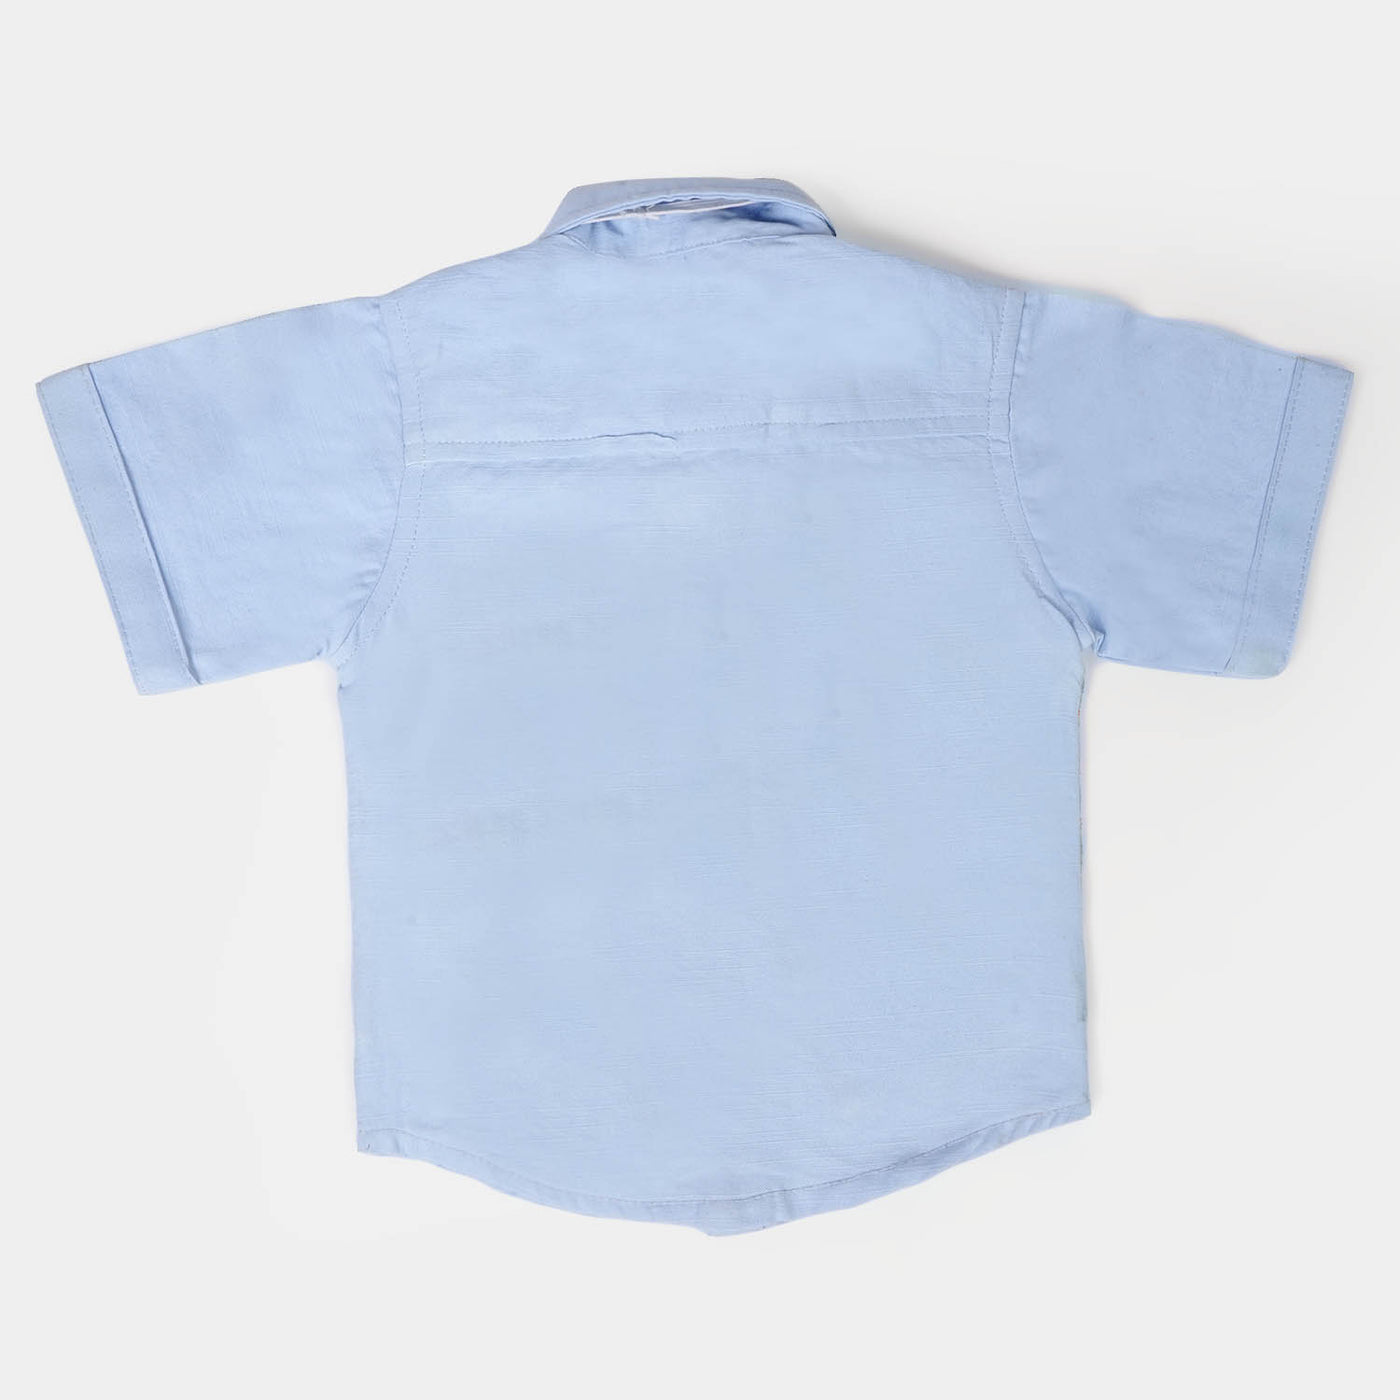 Infant Boys Cotton Suit - Multi Stripe